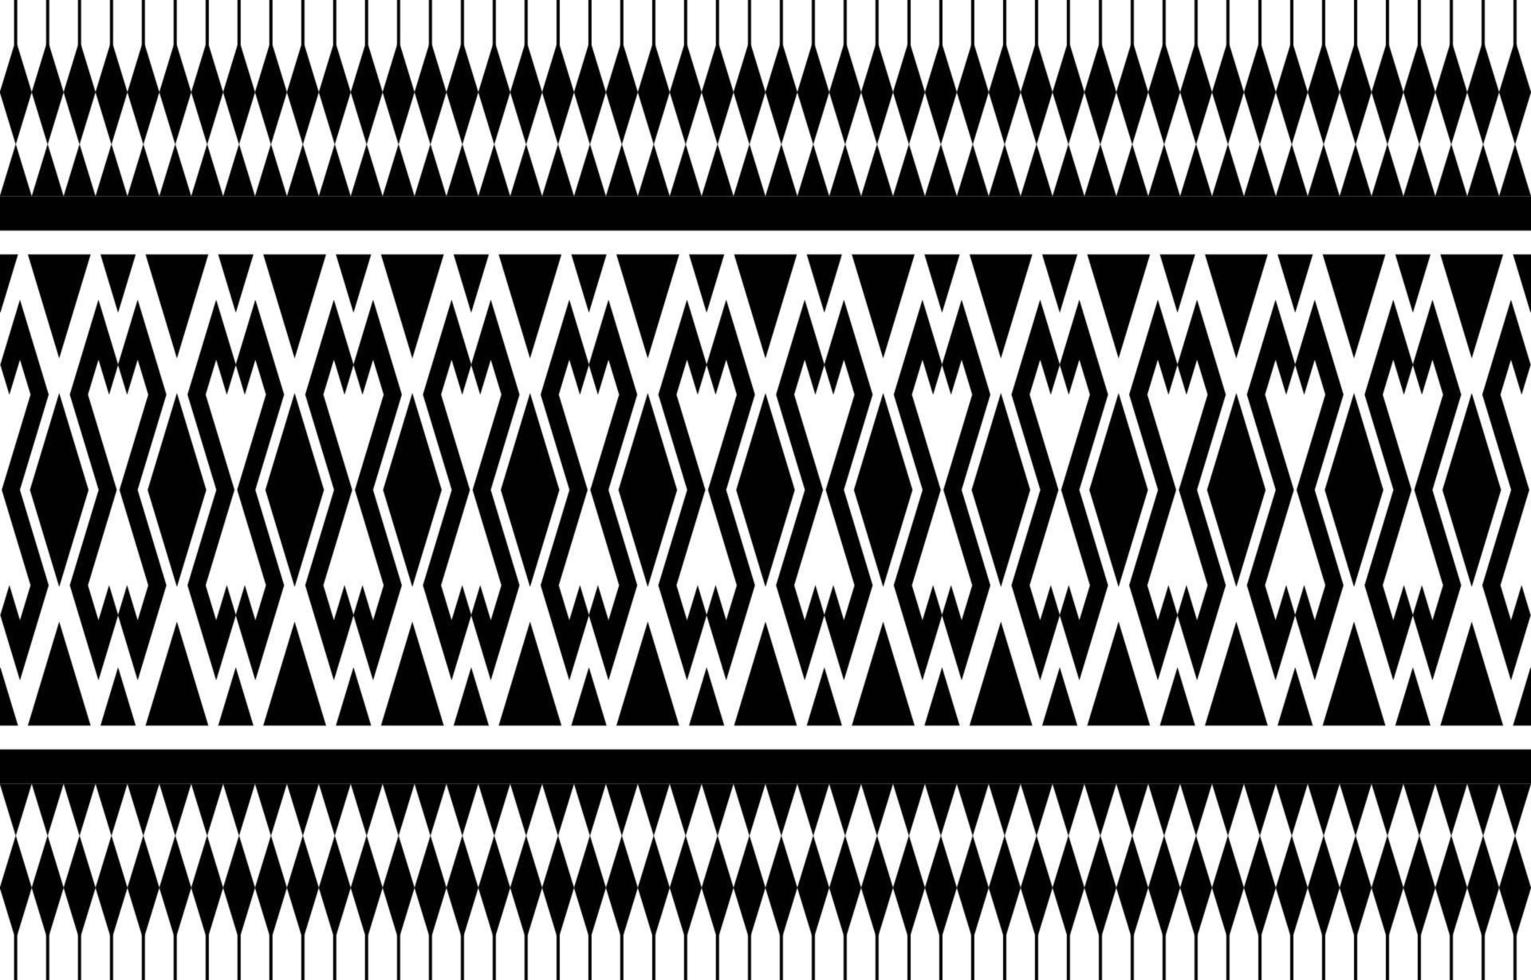 geometrische etnische patroon traditionele ontwerp achtergrond vector